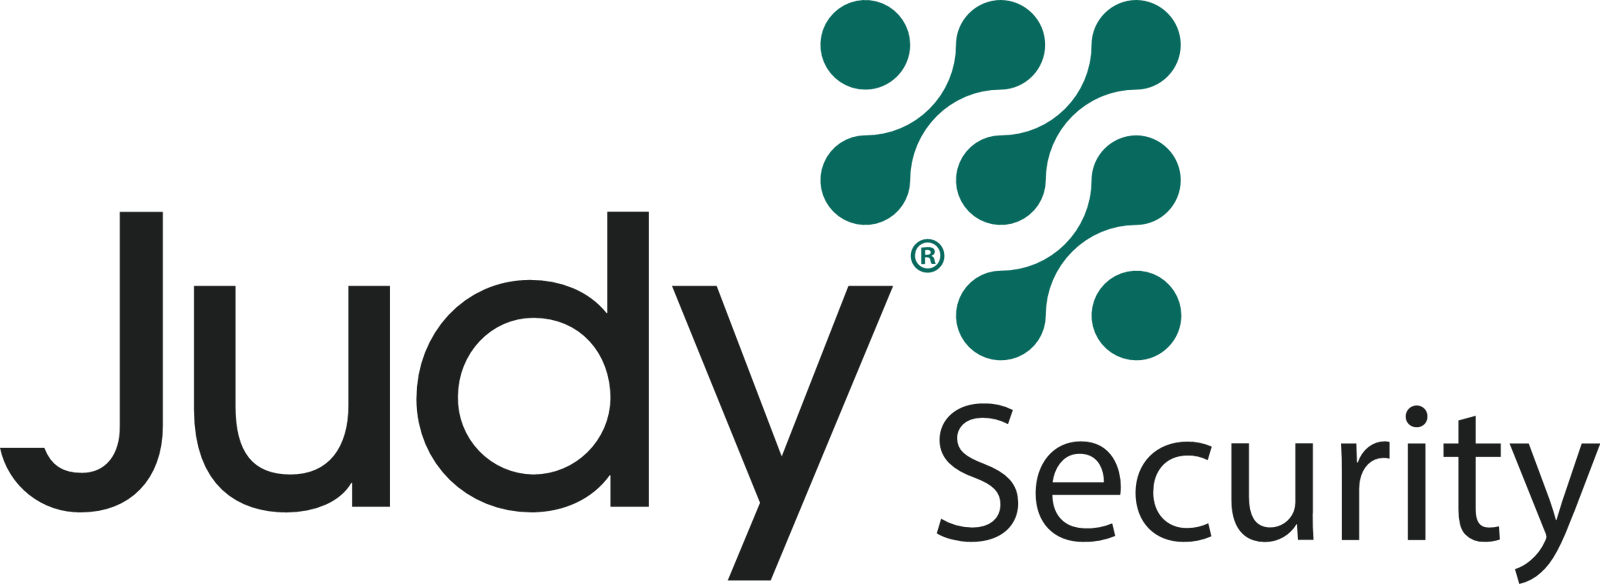 AaDya Security (Judy Security)